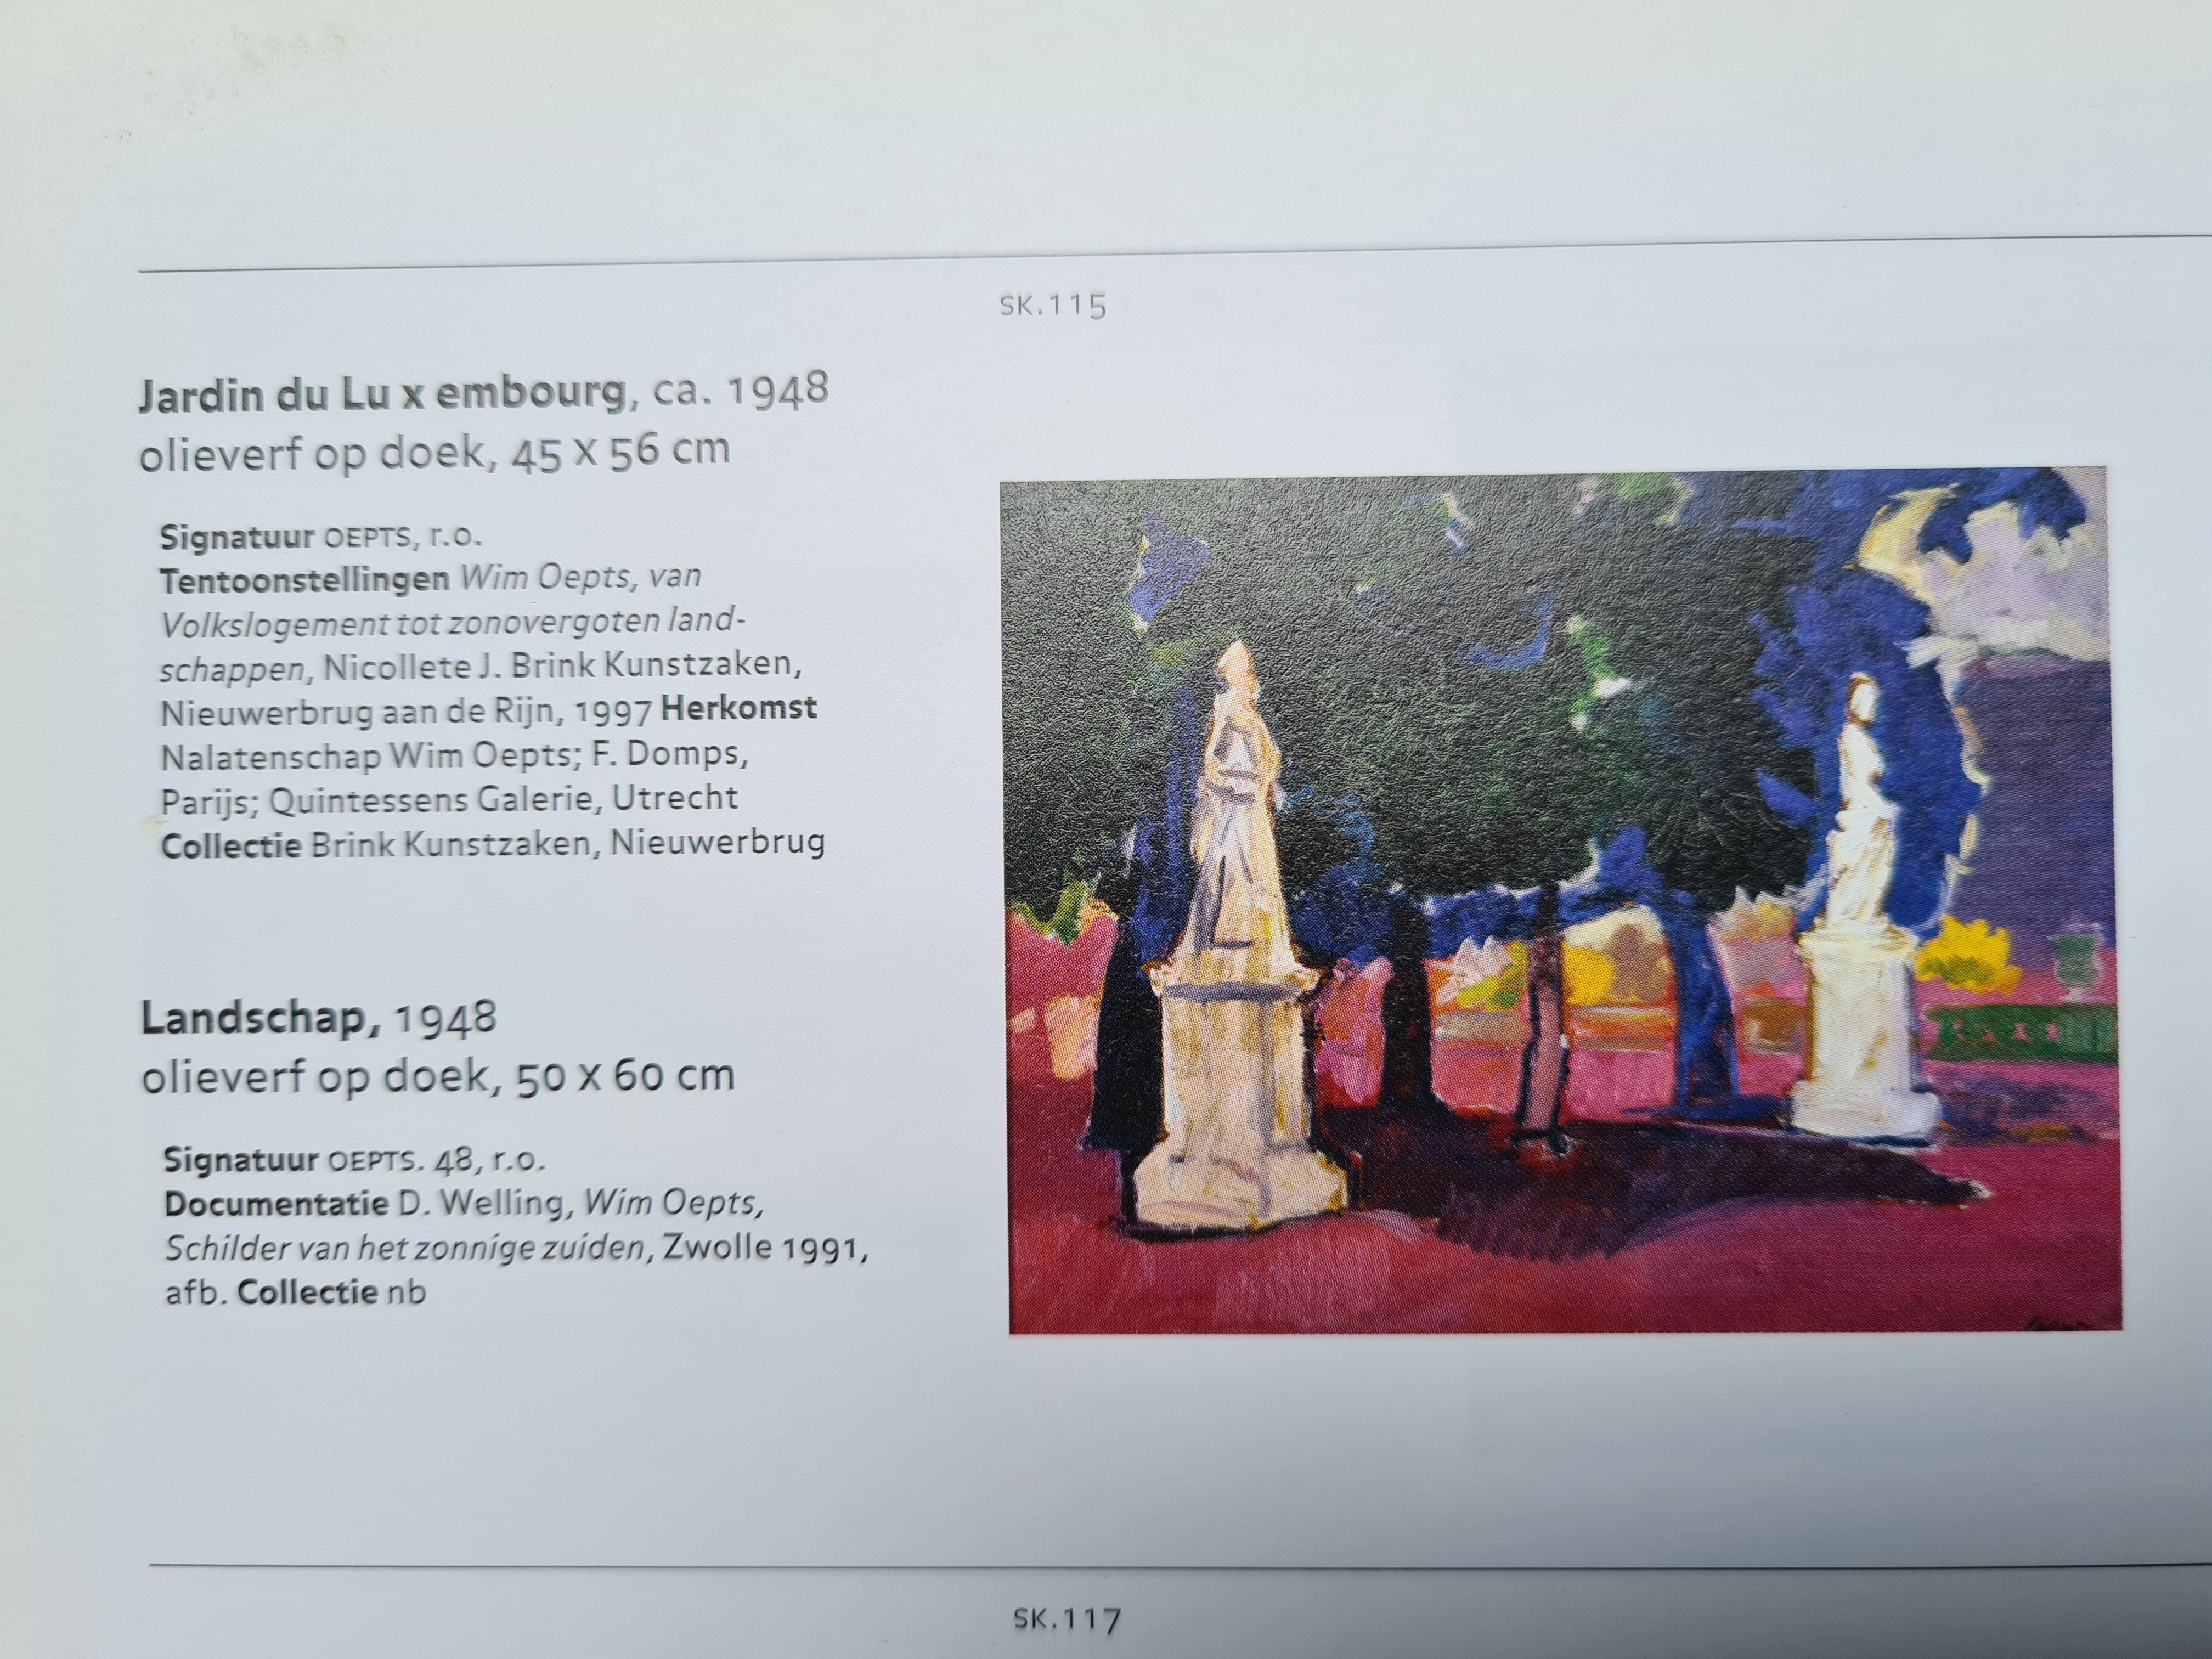 Skizze auf Papier des niederländischen Künstlers Wim Oepts aus der Mitte des 20. Jahrhunderts für sein Gemälde Jardin du Luxembourg aus dem Jahr 1948 (SK115 Monografie en Oeurvrecatalogus) mit dem Atelierstempel unten rechts.

 Die Zeichnung wurde